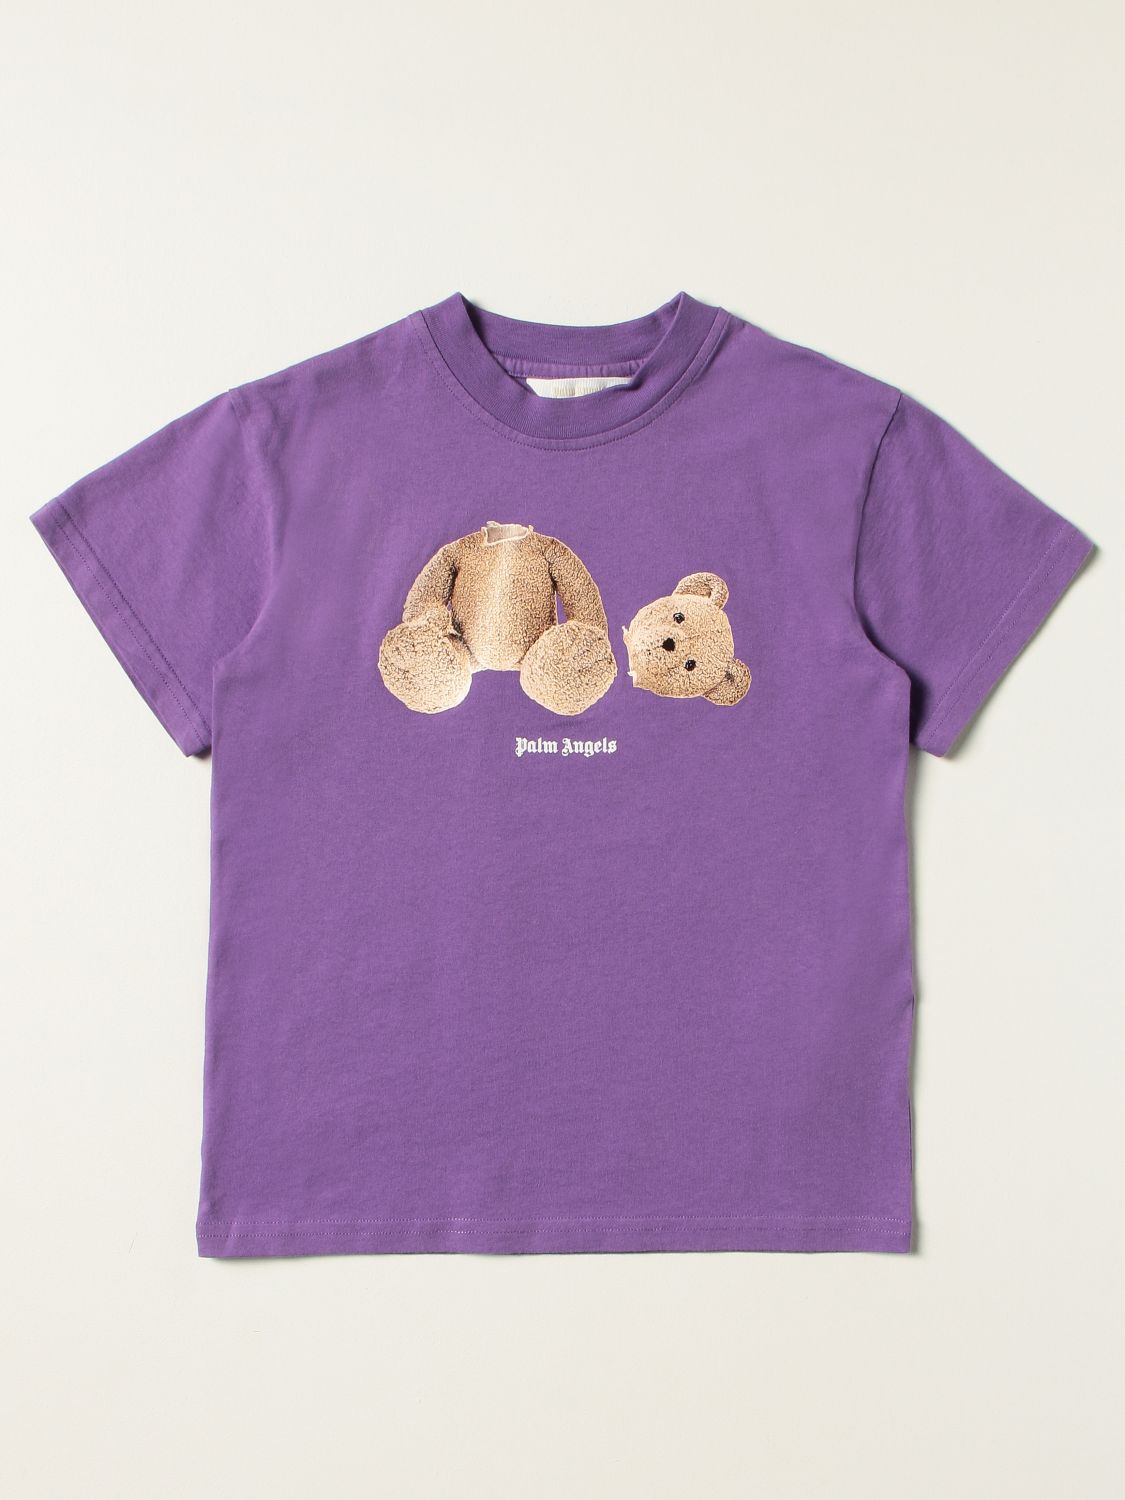 T恤 Palm Angels: T恤 儿童 Palm Angels 紫色 1